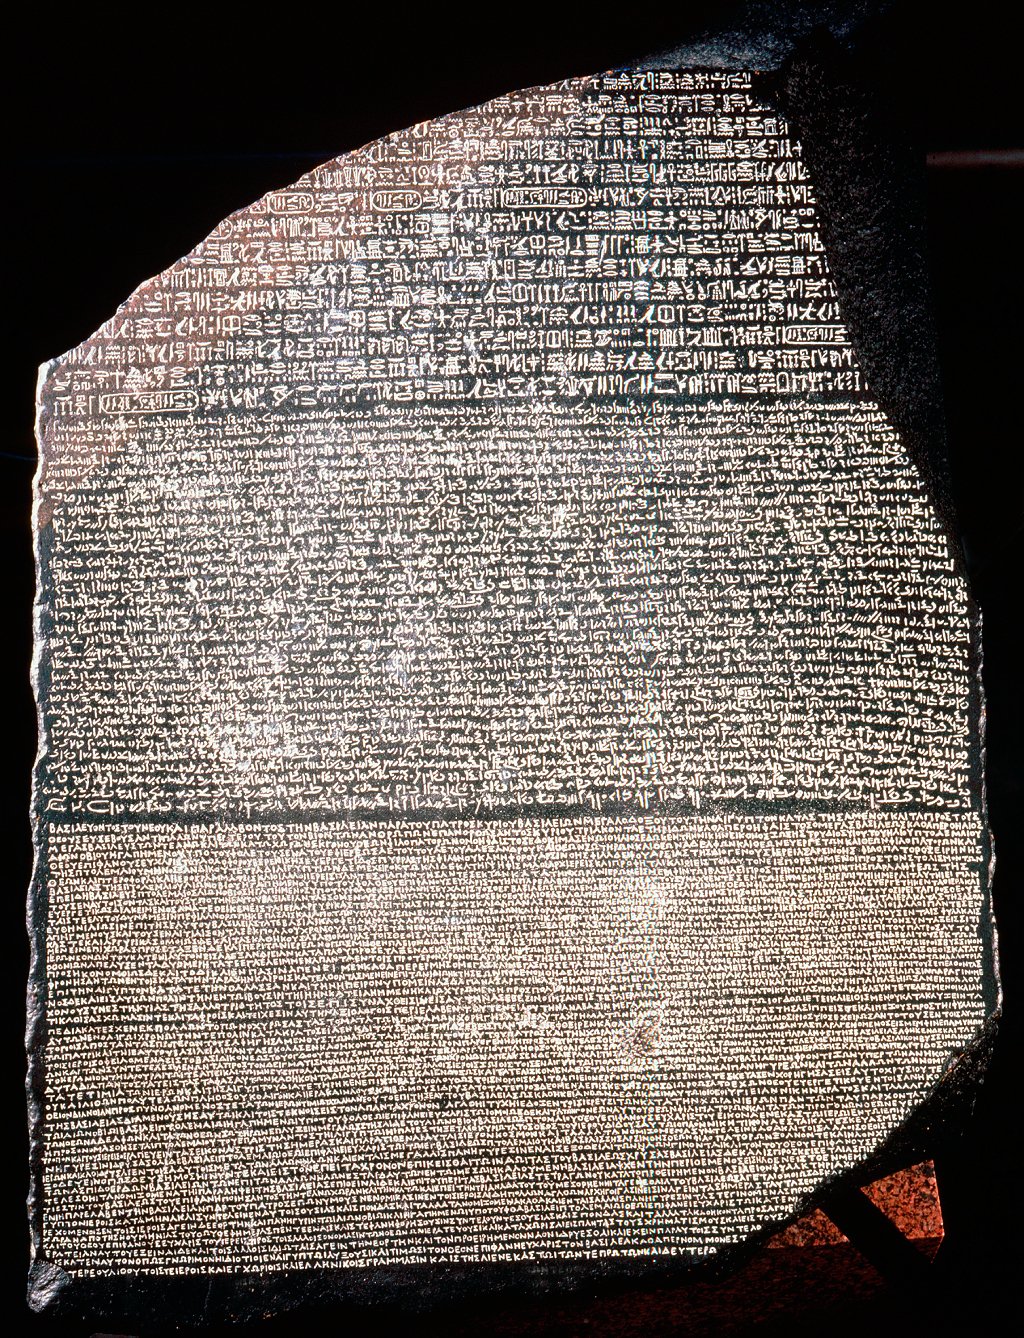 La piedra de Rosetta, con jeroglíficos, egipcio demótico y griego antiguo.